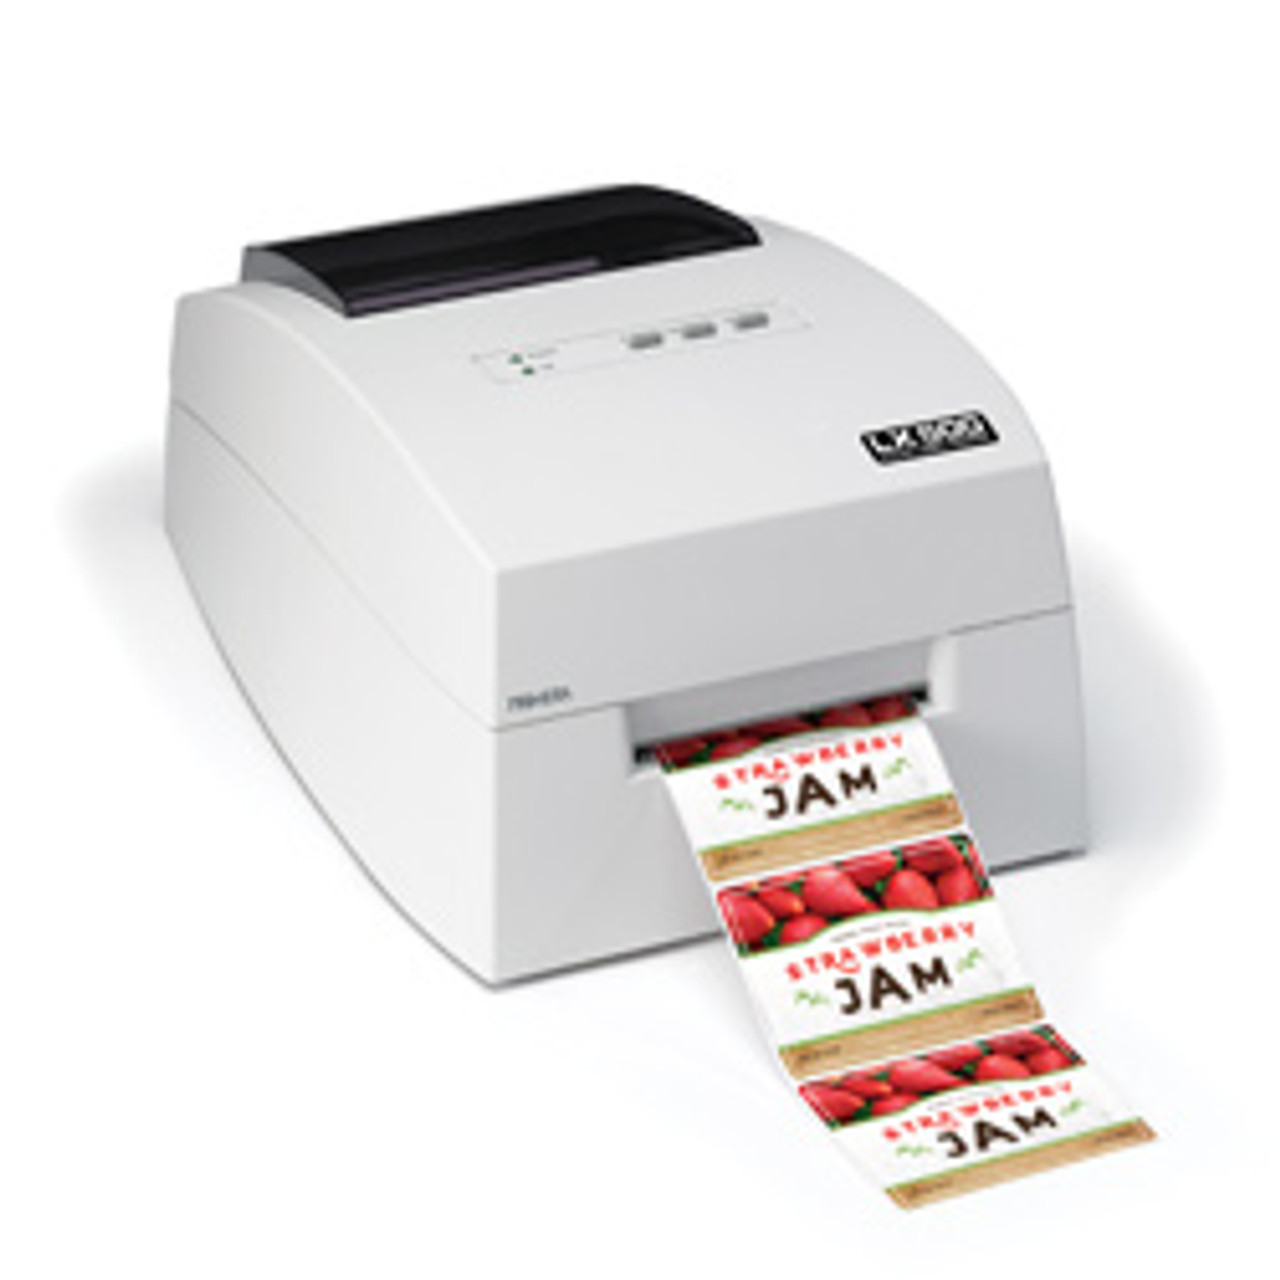 Buy LX3000 Color Label Printer Online